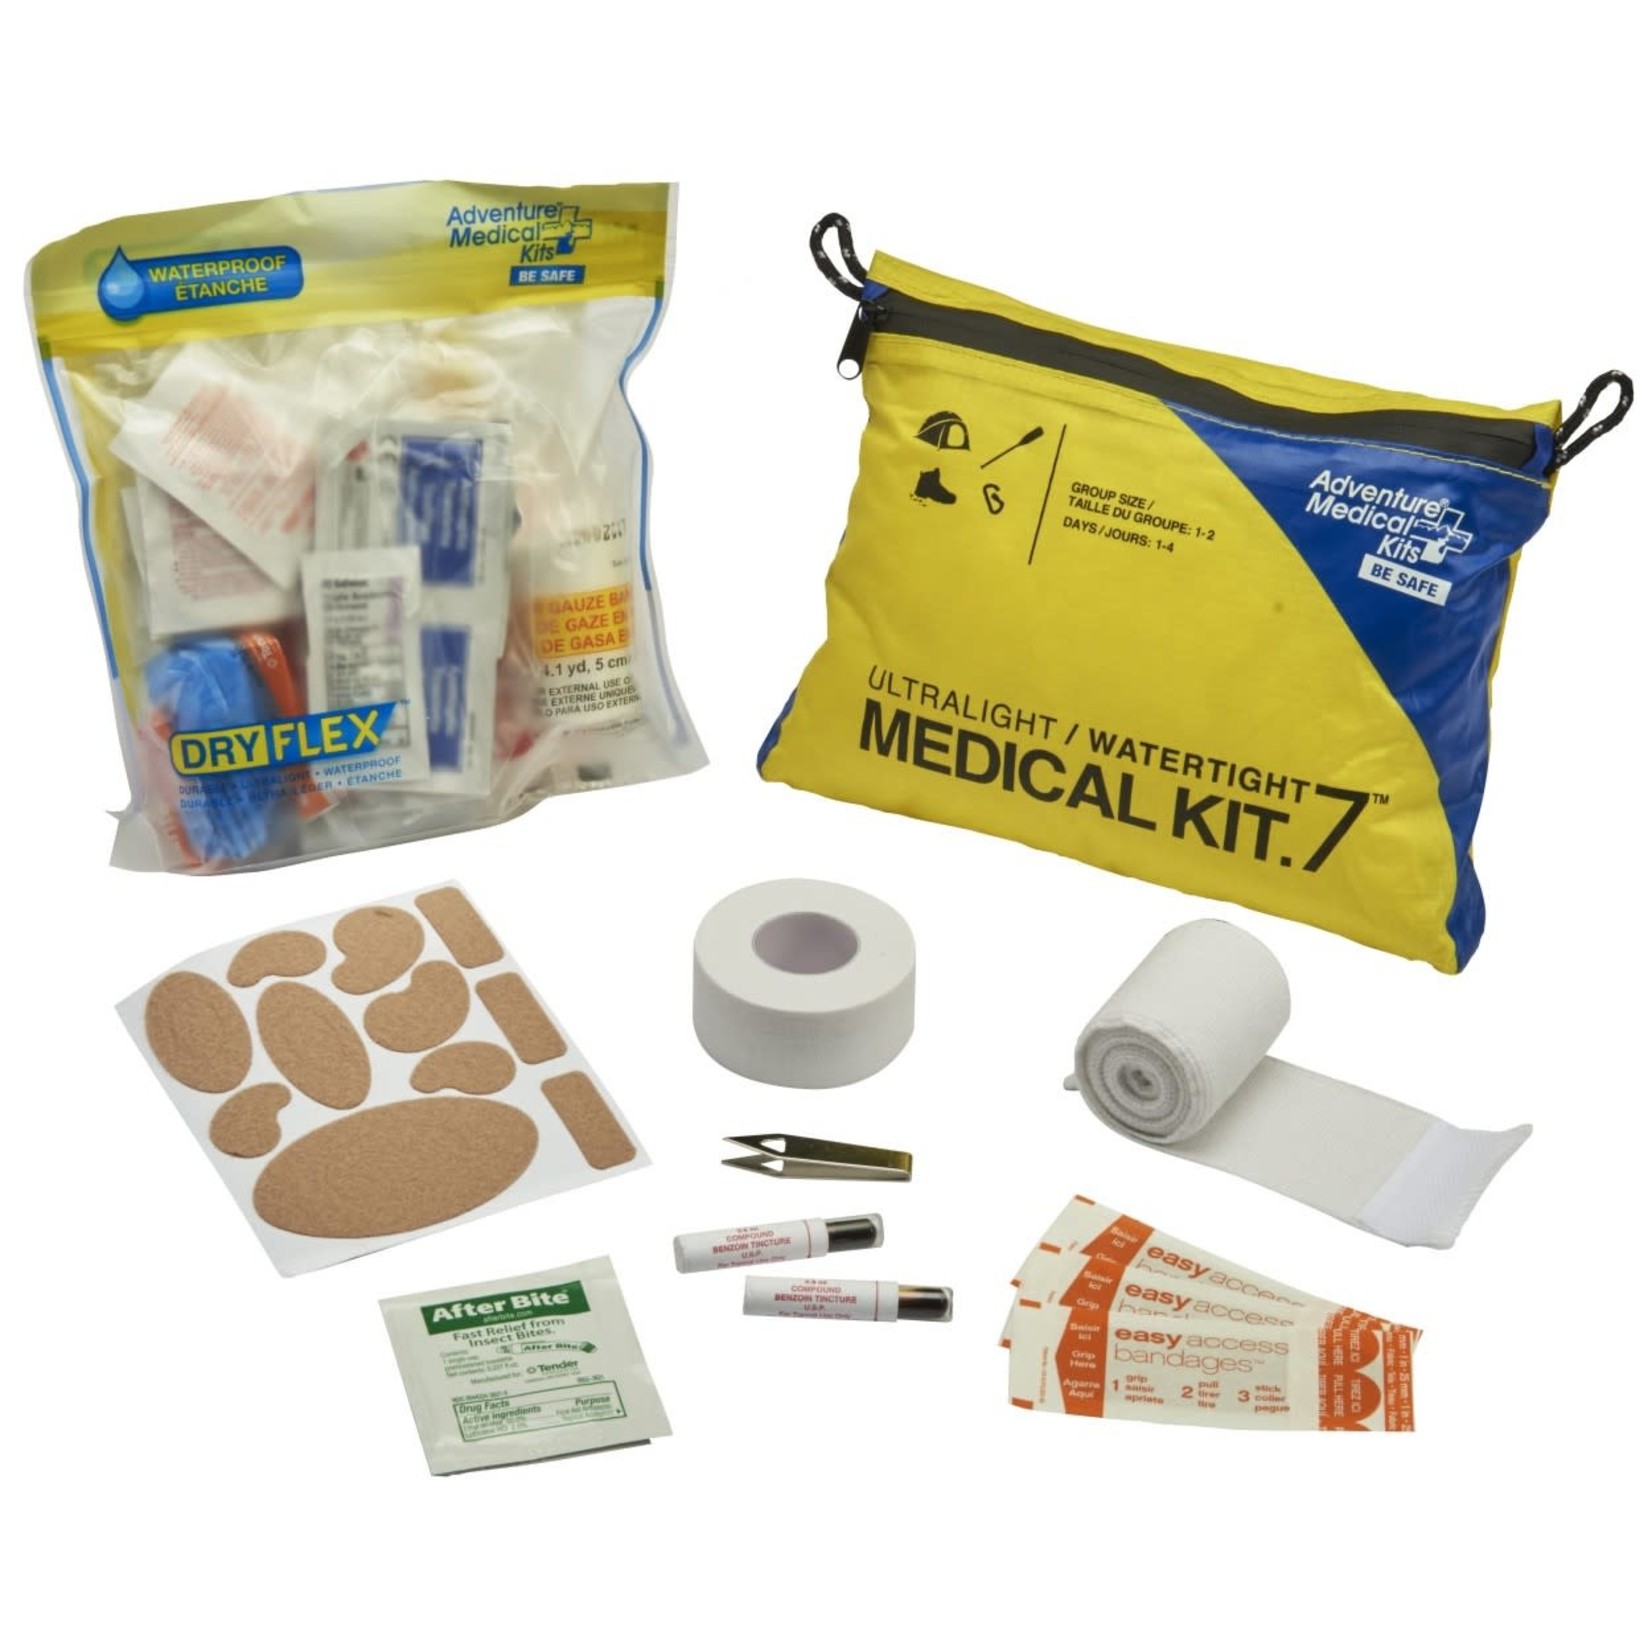 Adventure Medical Kit Trousse de premiers soins Ultralight .7